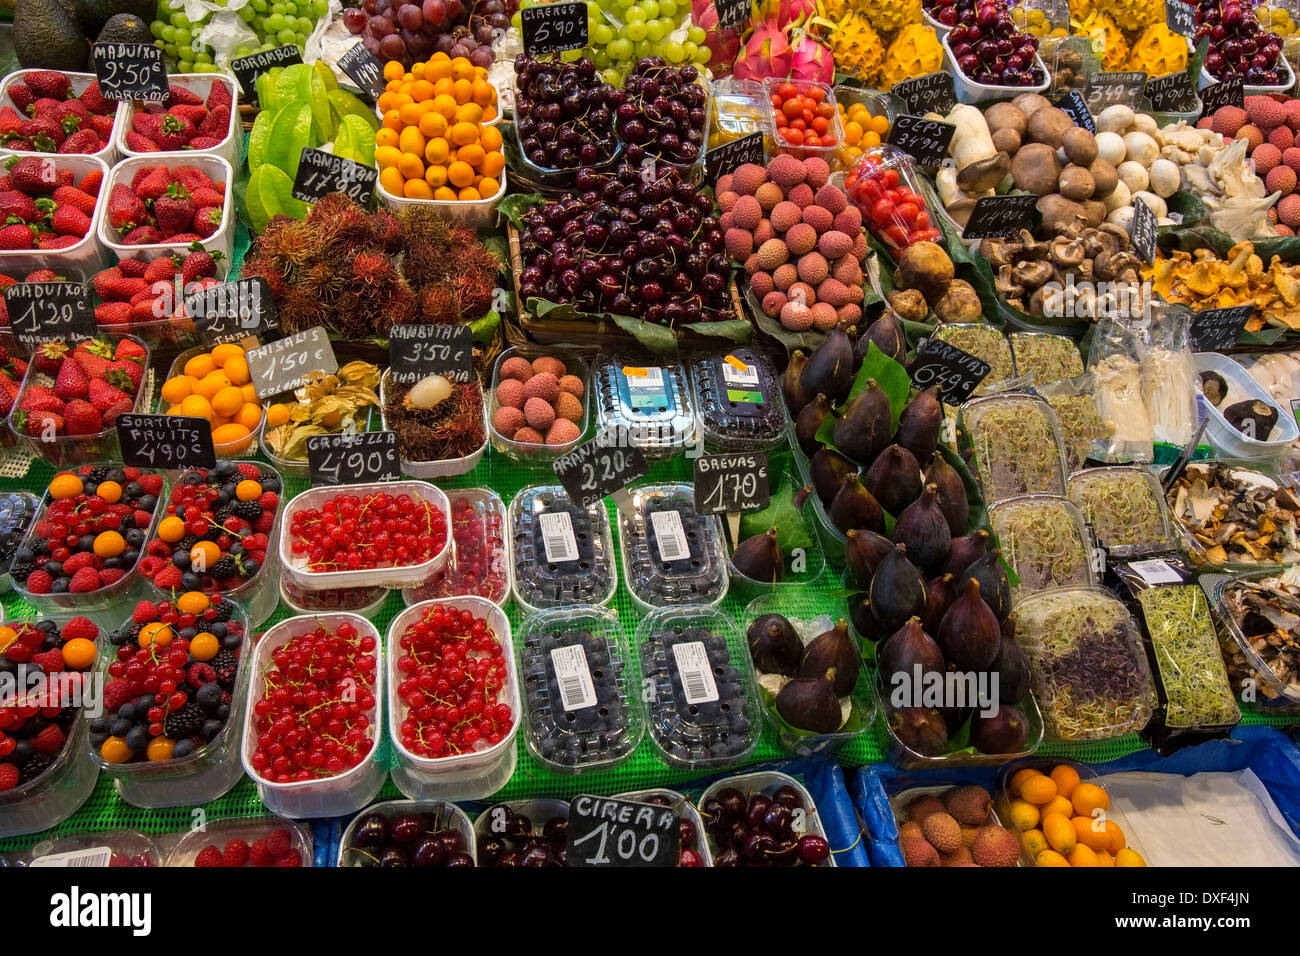 Visualizzazione di frutta e verdura nella famosa San Giuseppe mercato alimentare nel quartiere Eixample di Barcellona in Catalogna, Spagna. Foto Stock